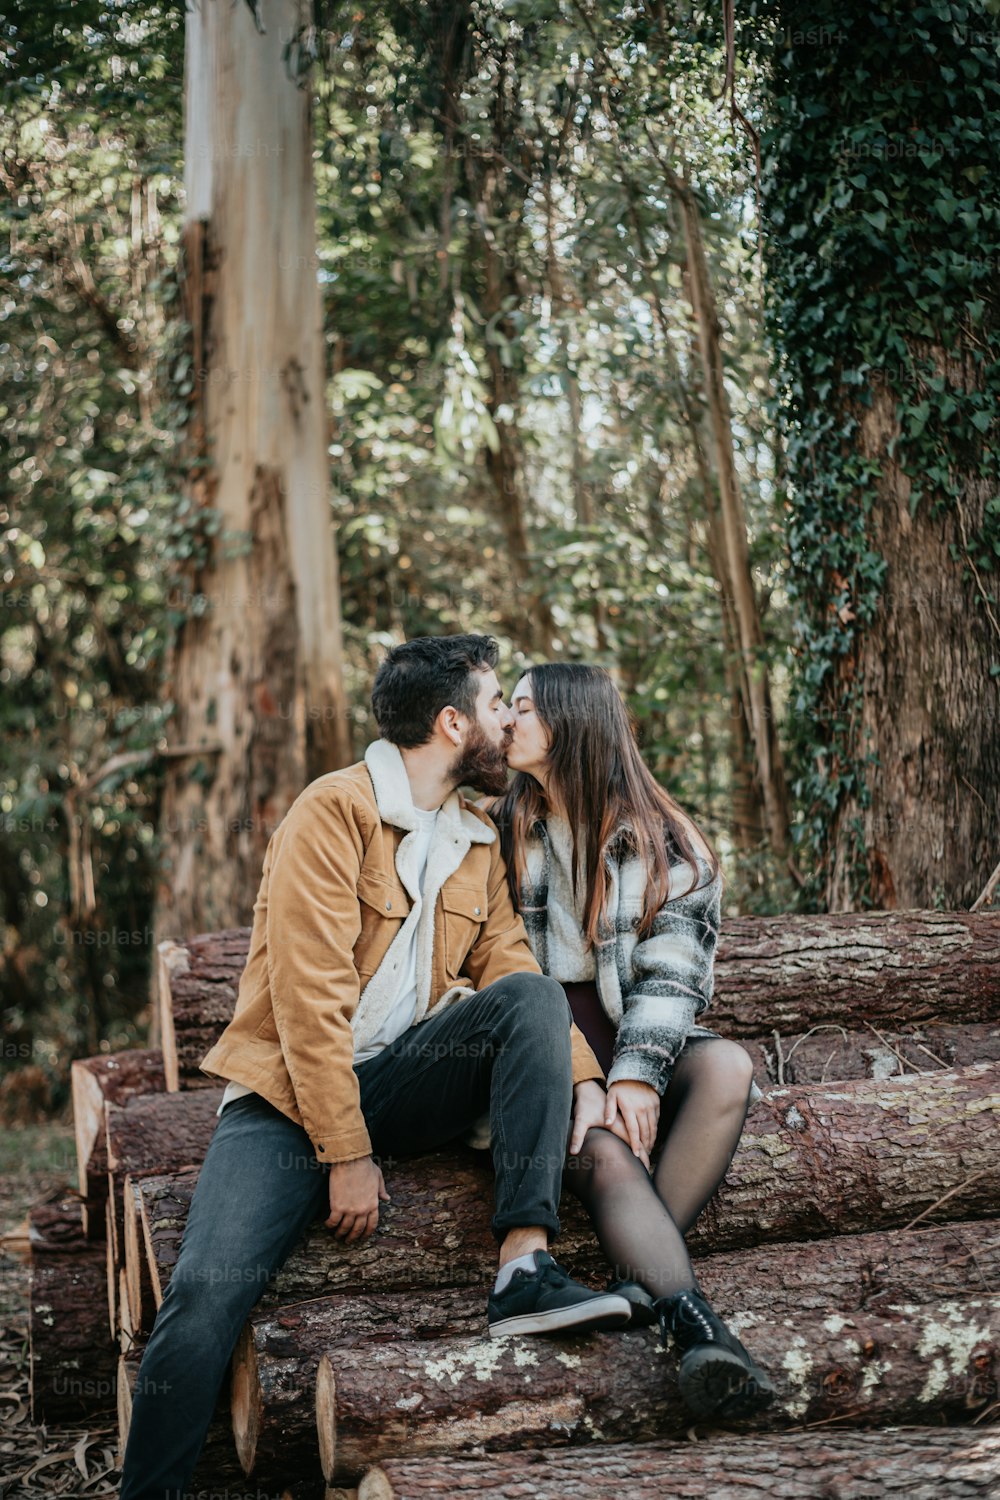 숲 속의 통나무에 앉아 있는 남자와 여자